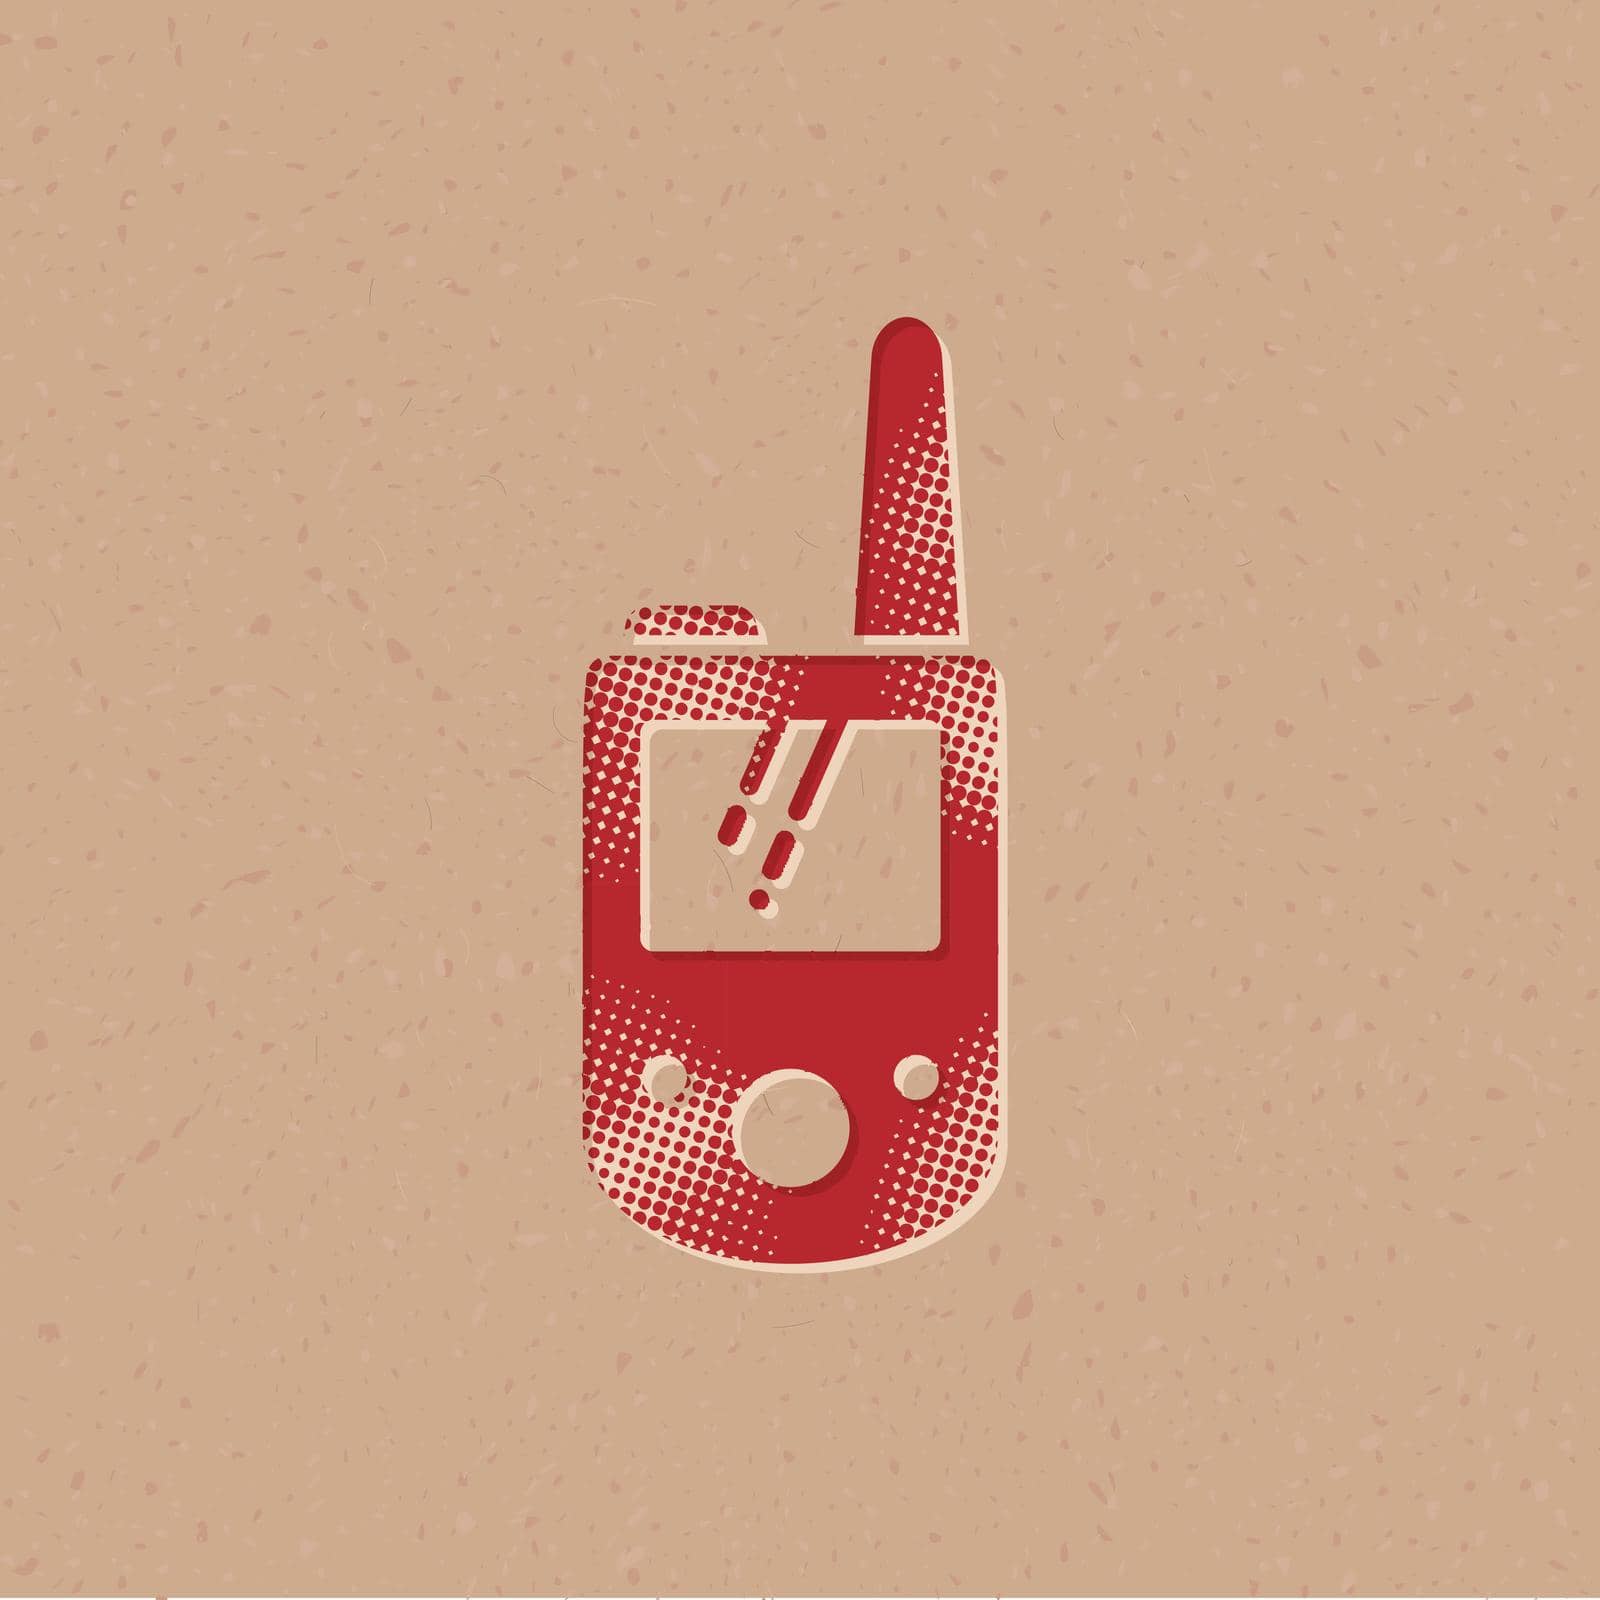 Handie talkie icon in halftone style. Grunge background vector illustration.